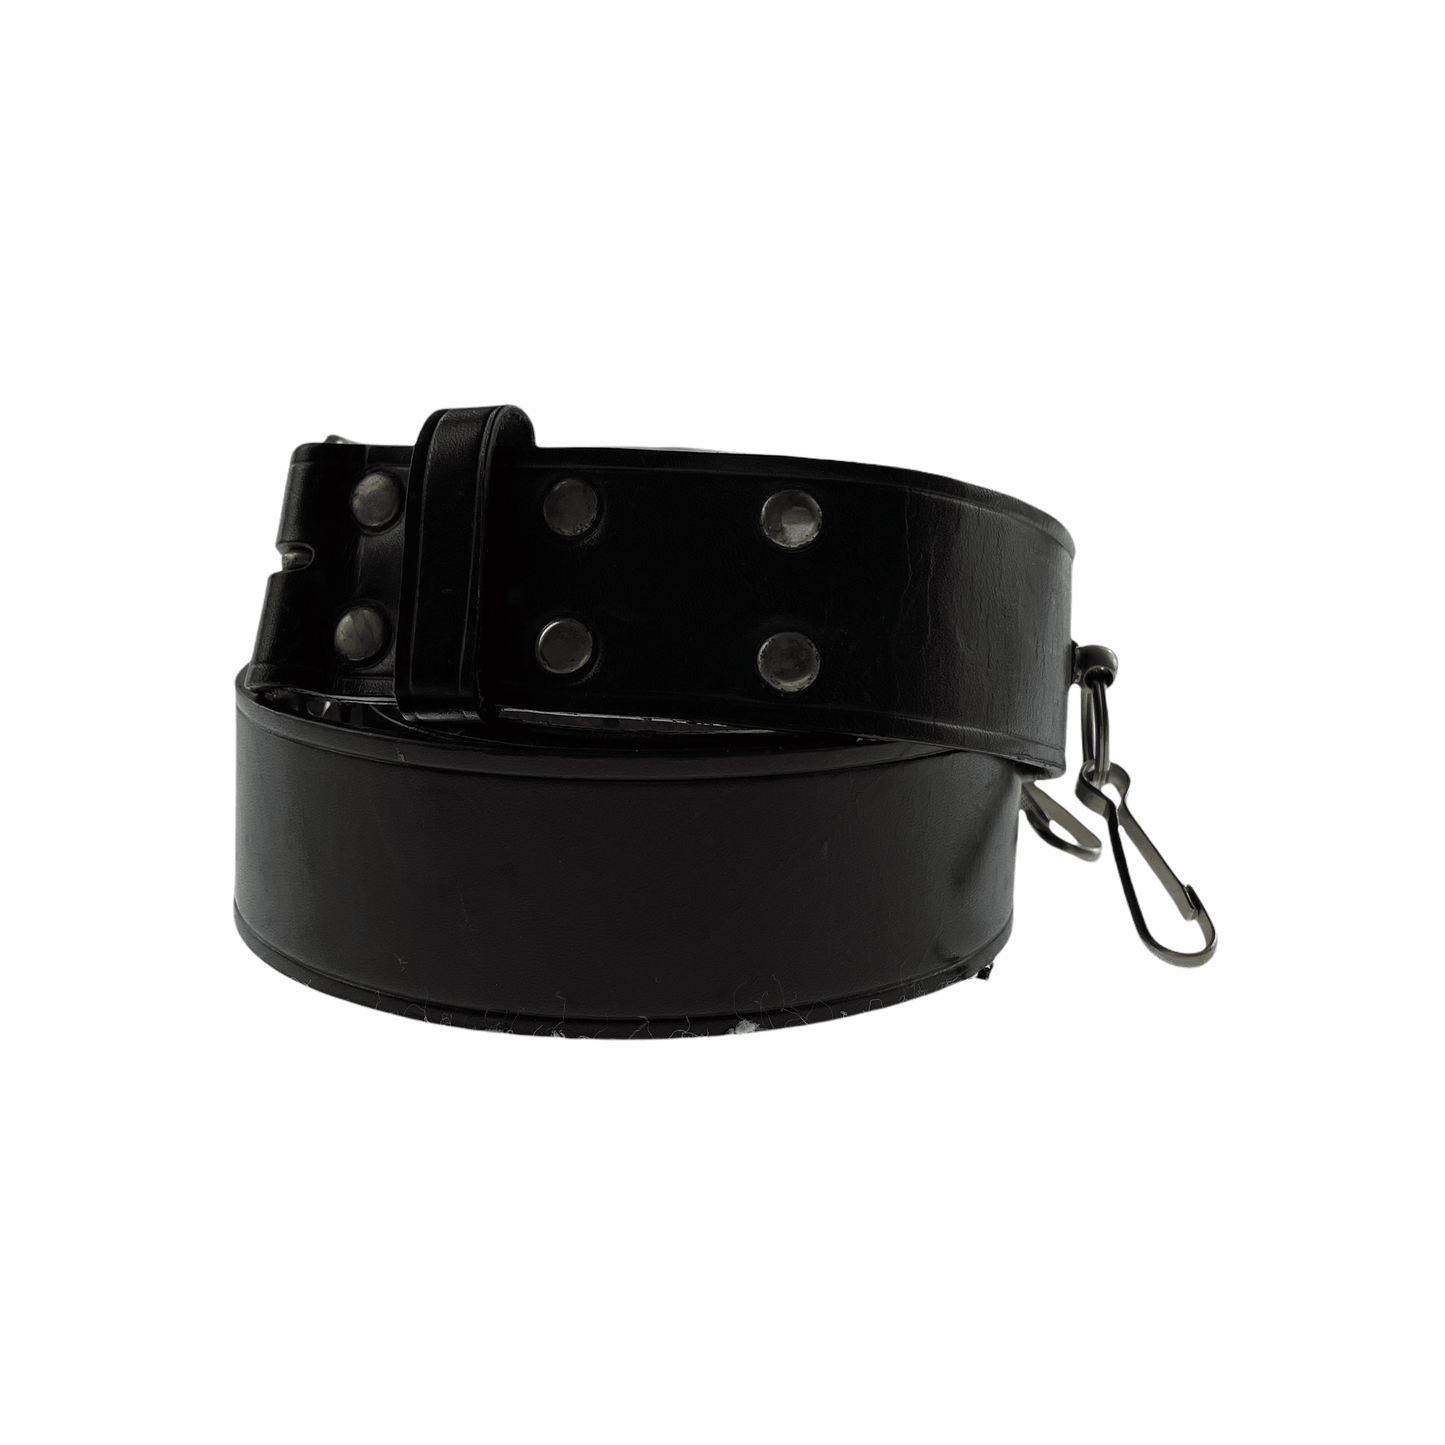 Vintage Comme des garçons leather buckle belt - Known Source